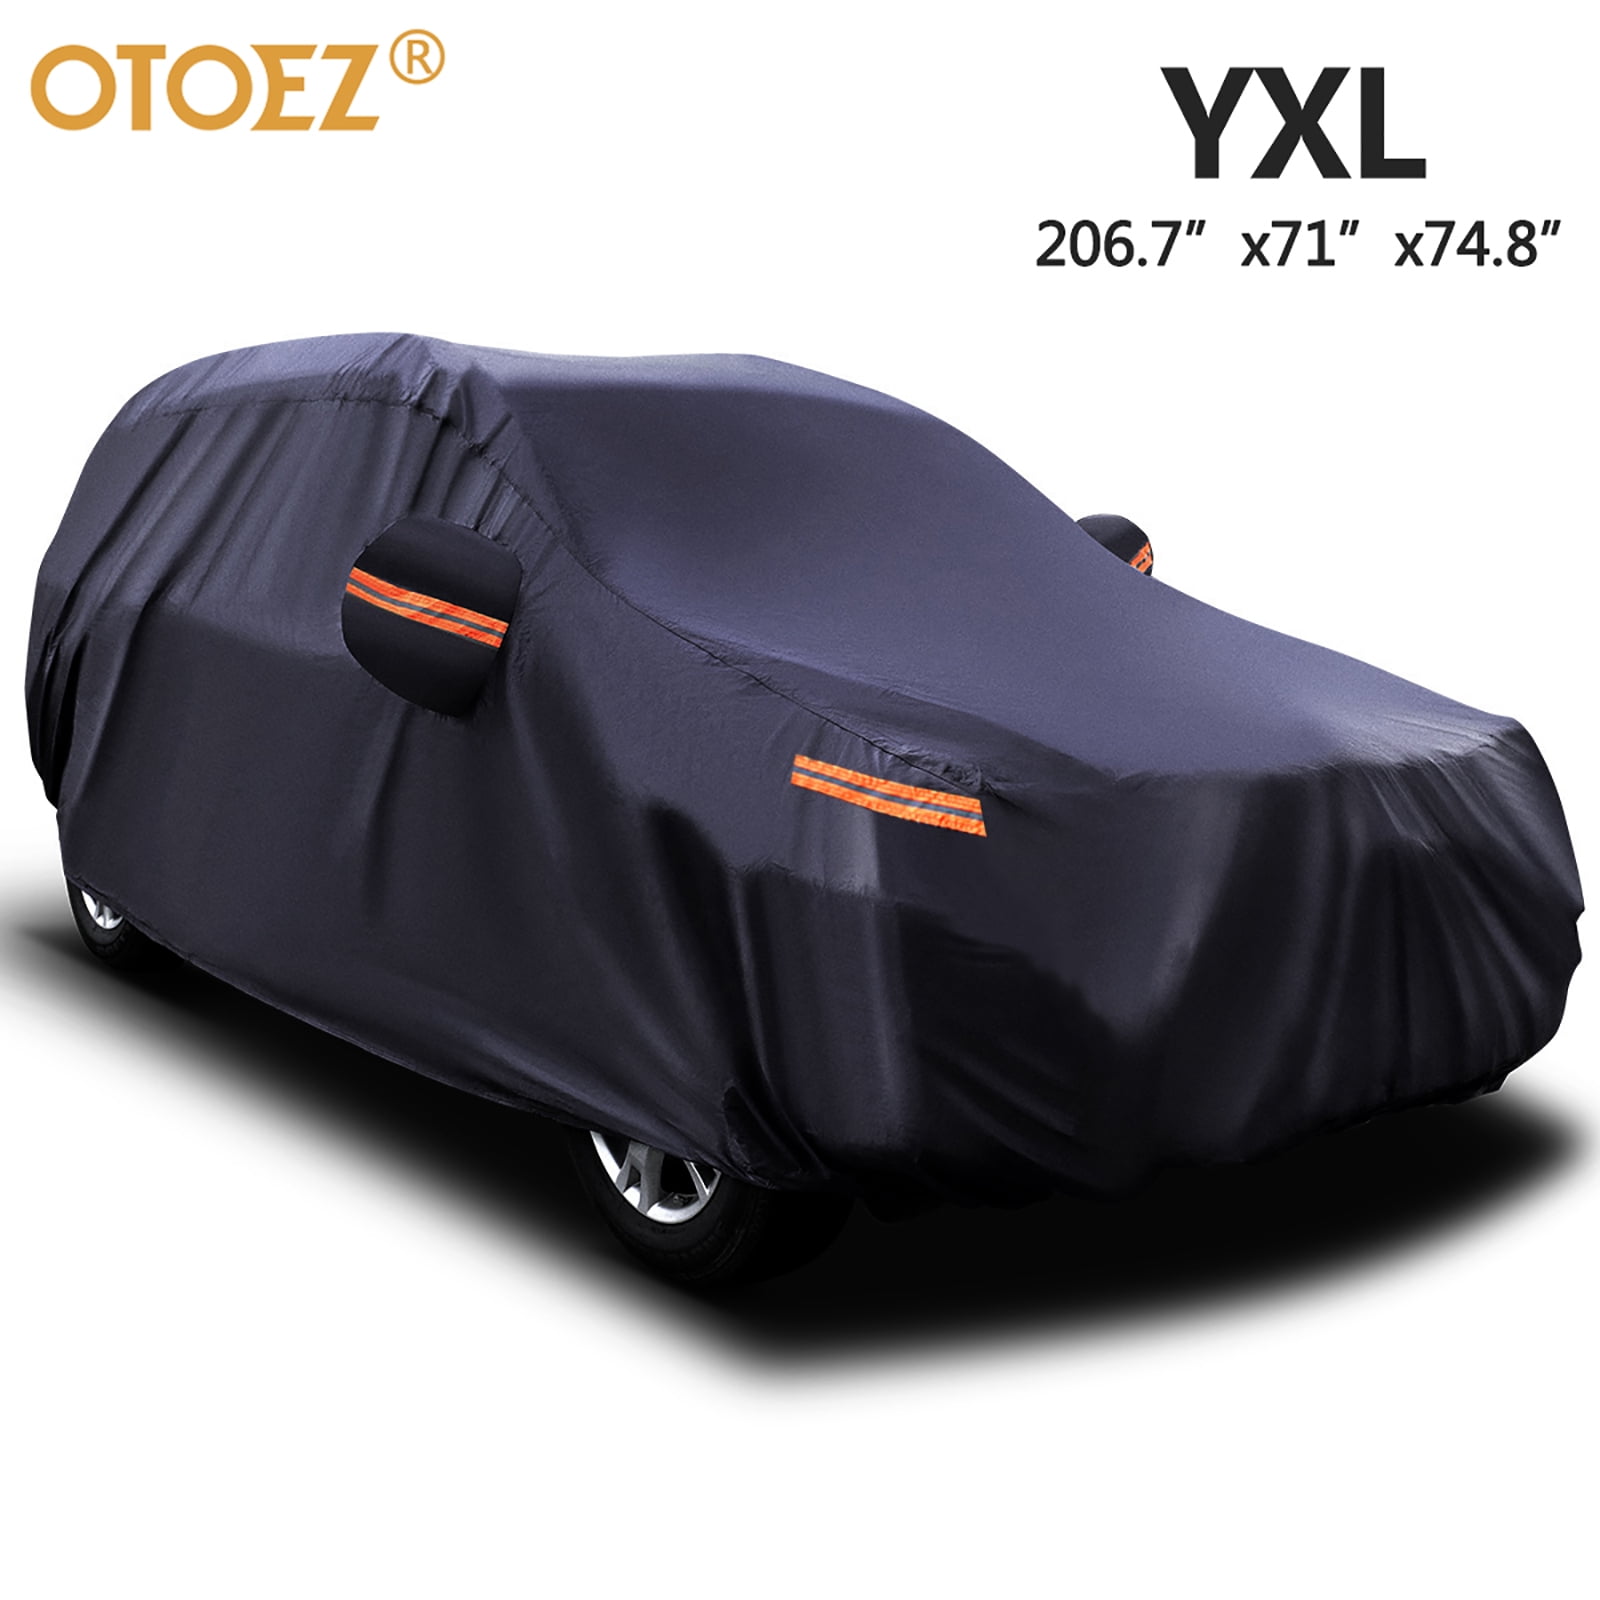 Car cover car tarpaulin full garage waterproof fits for Dacia Solenza